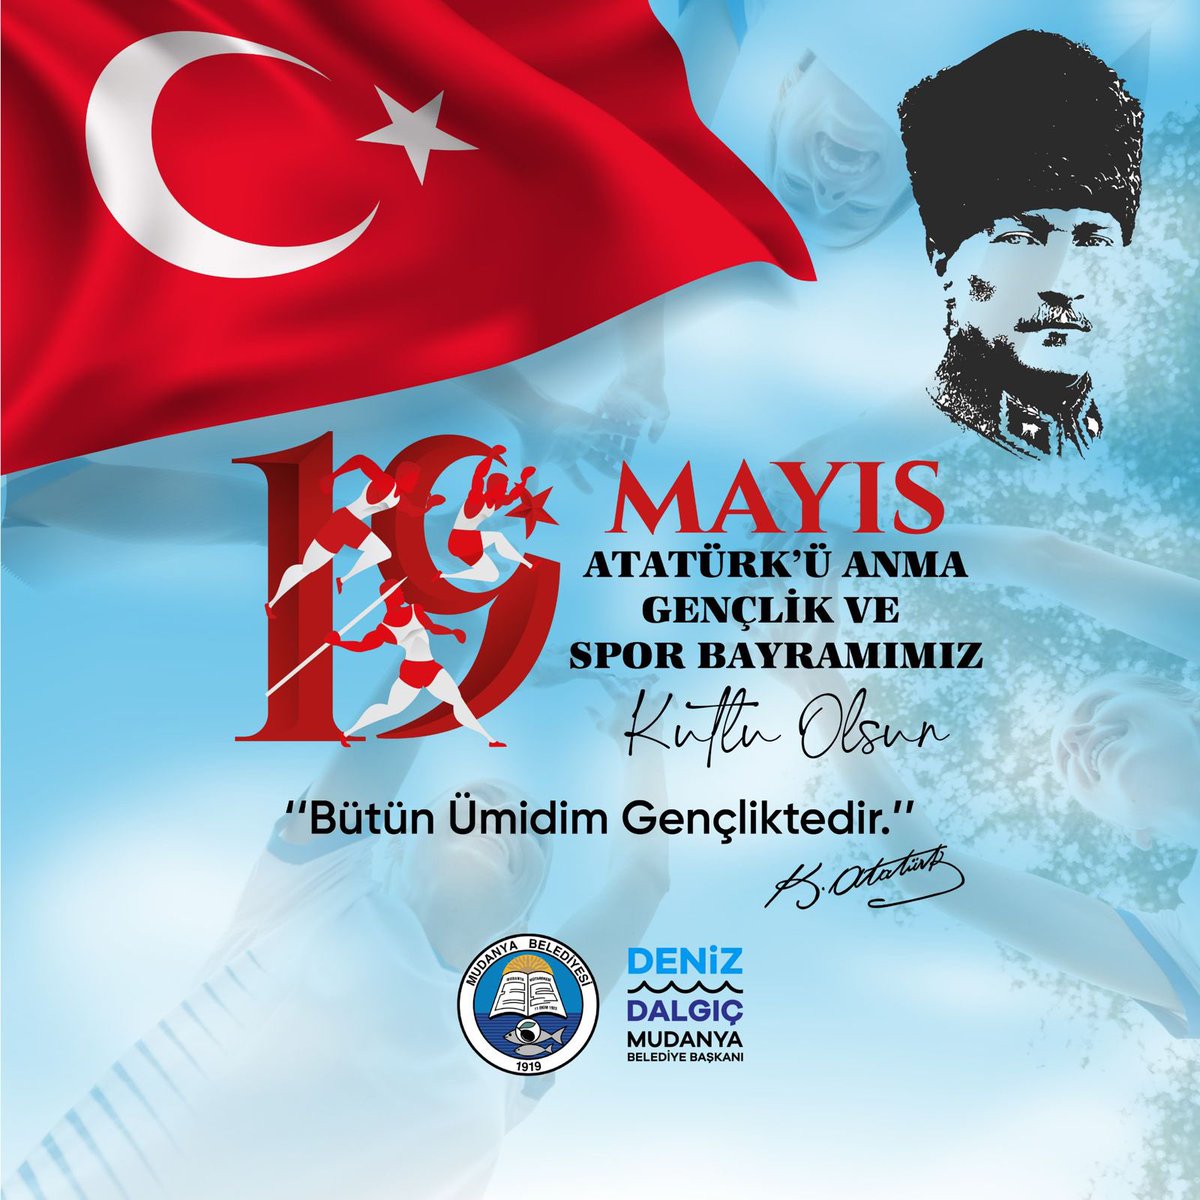 Ruhumuzda bağımsızlık var. İlk günkü heyecanla Atatürk’ün izindeyiz. Tüm gücümüzle, gençlik ateşimizle aydınlık yarınlara emin adımlarla yürüyoruz. Bugün, yarın ve daima. 19 Mayıs Atatürk’ü Anma Gençlik ve Spor Bayramımız kutlu olsun! 🇹🇷 #aydınlığınizindeyiz